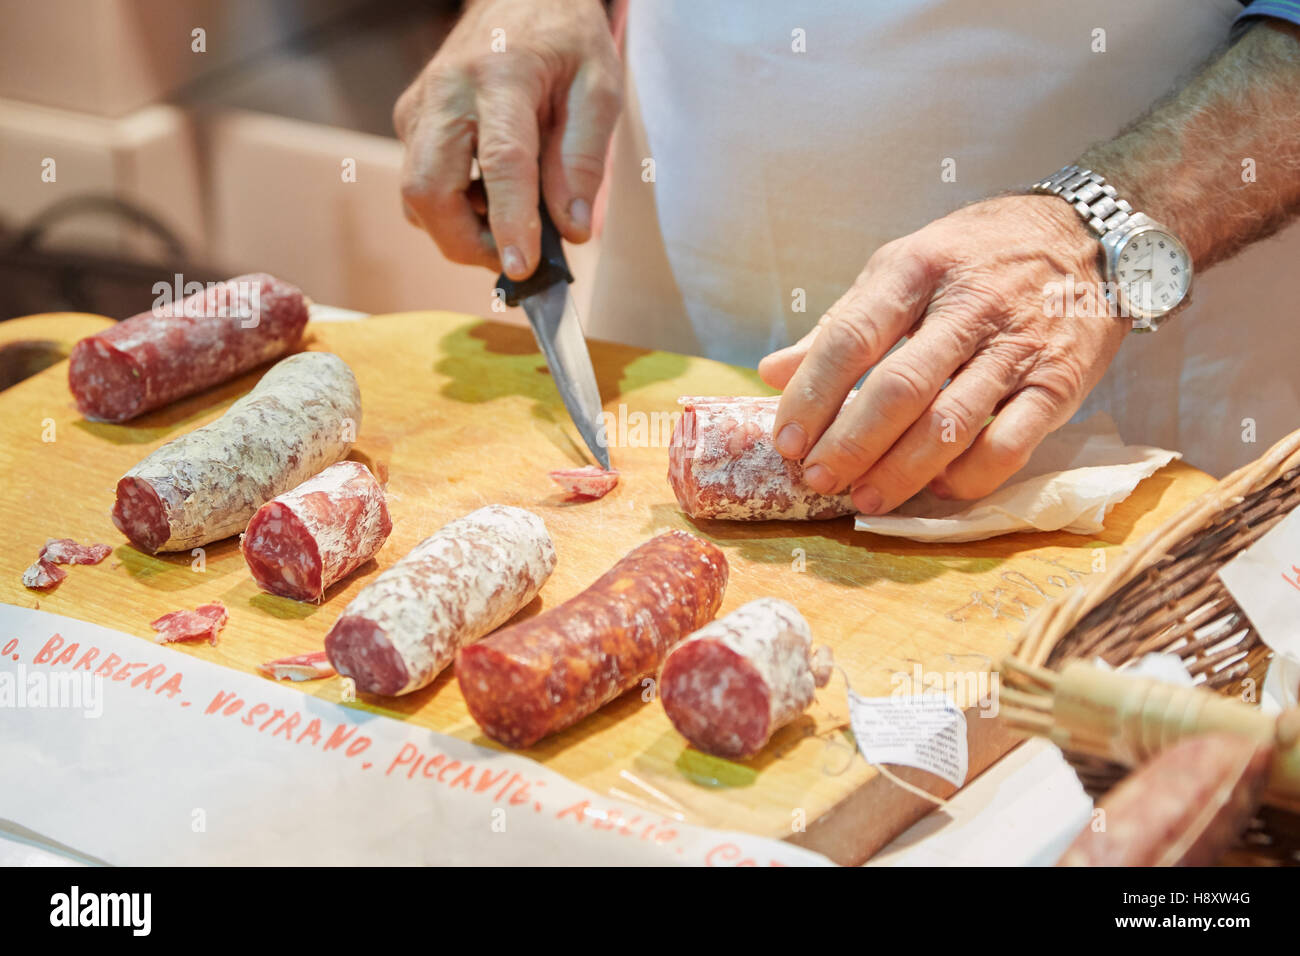 Man slicing salami aromatisé à la vente au cours de la truffe blanche d'Alba en juste, Italie Banque D'Images